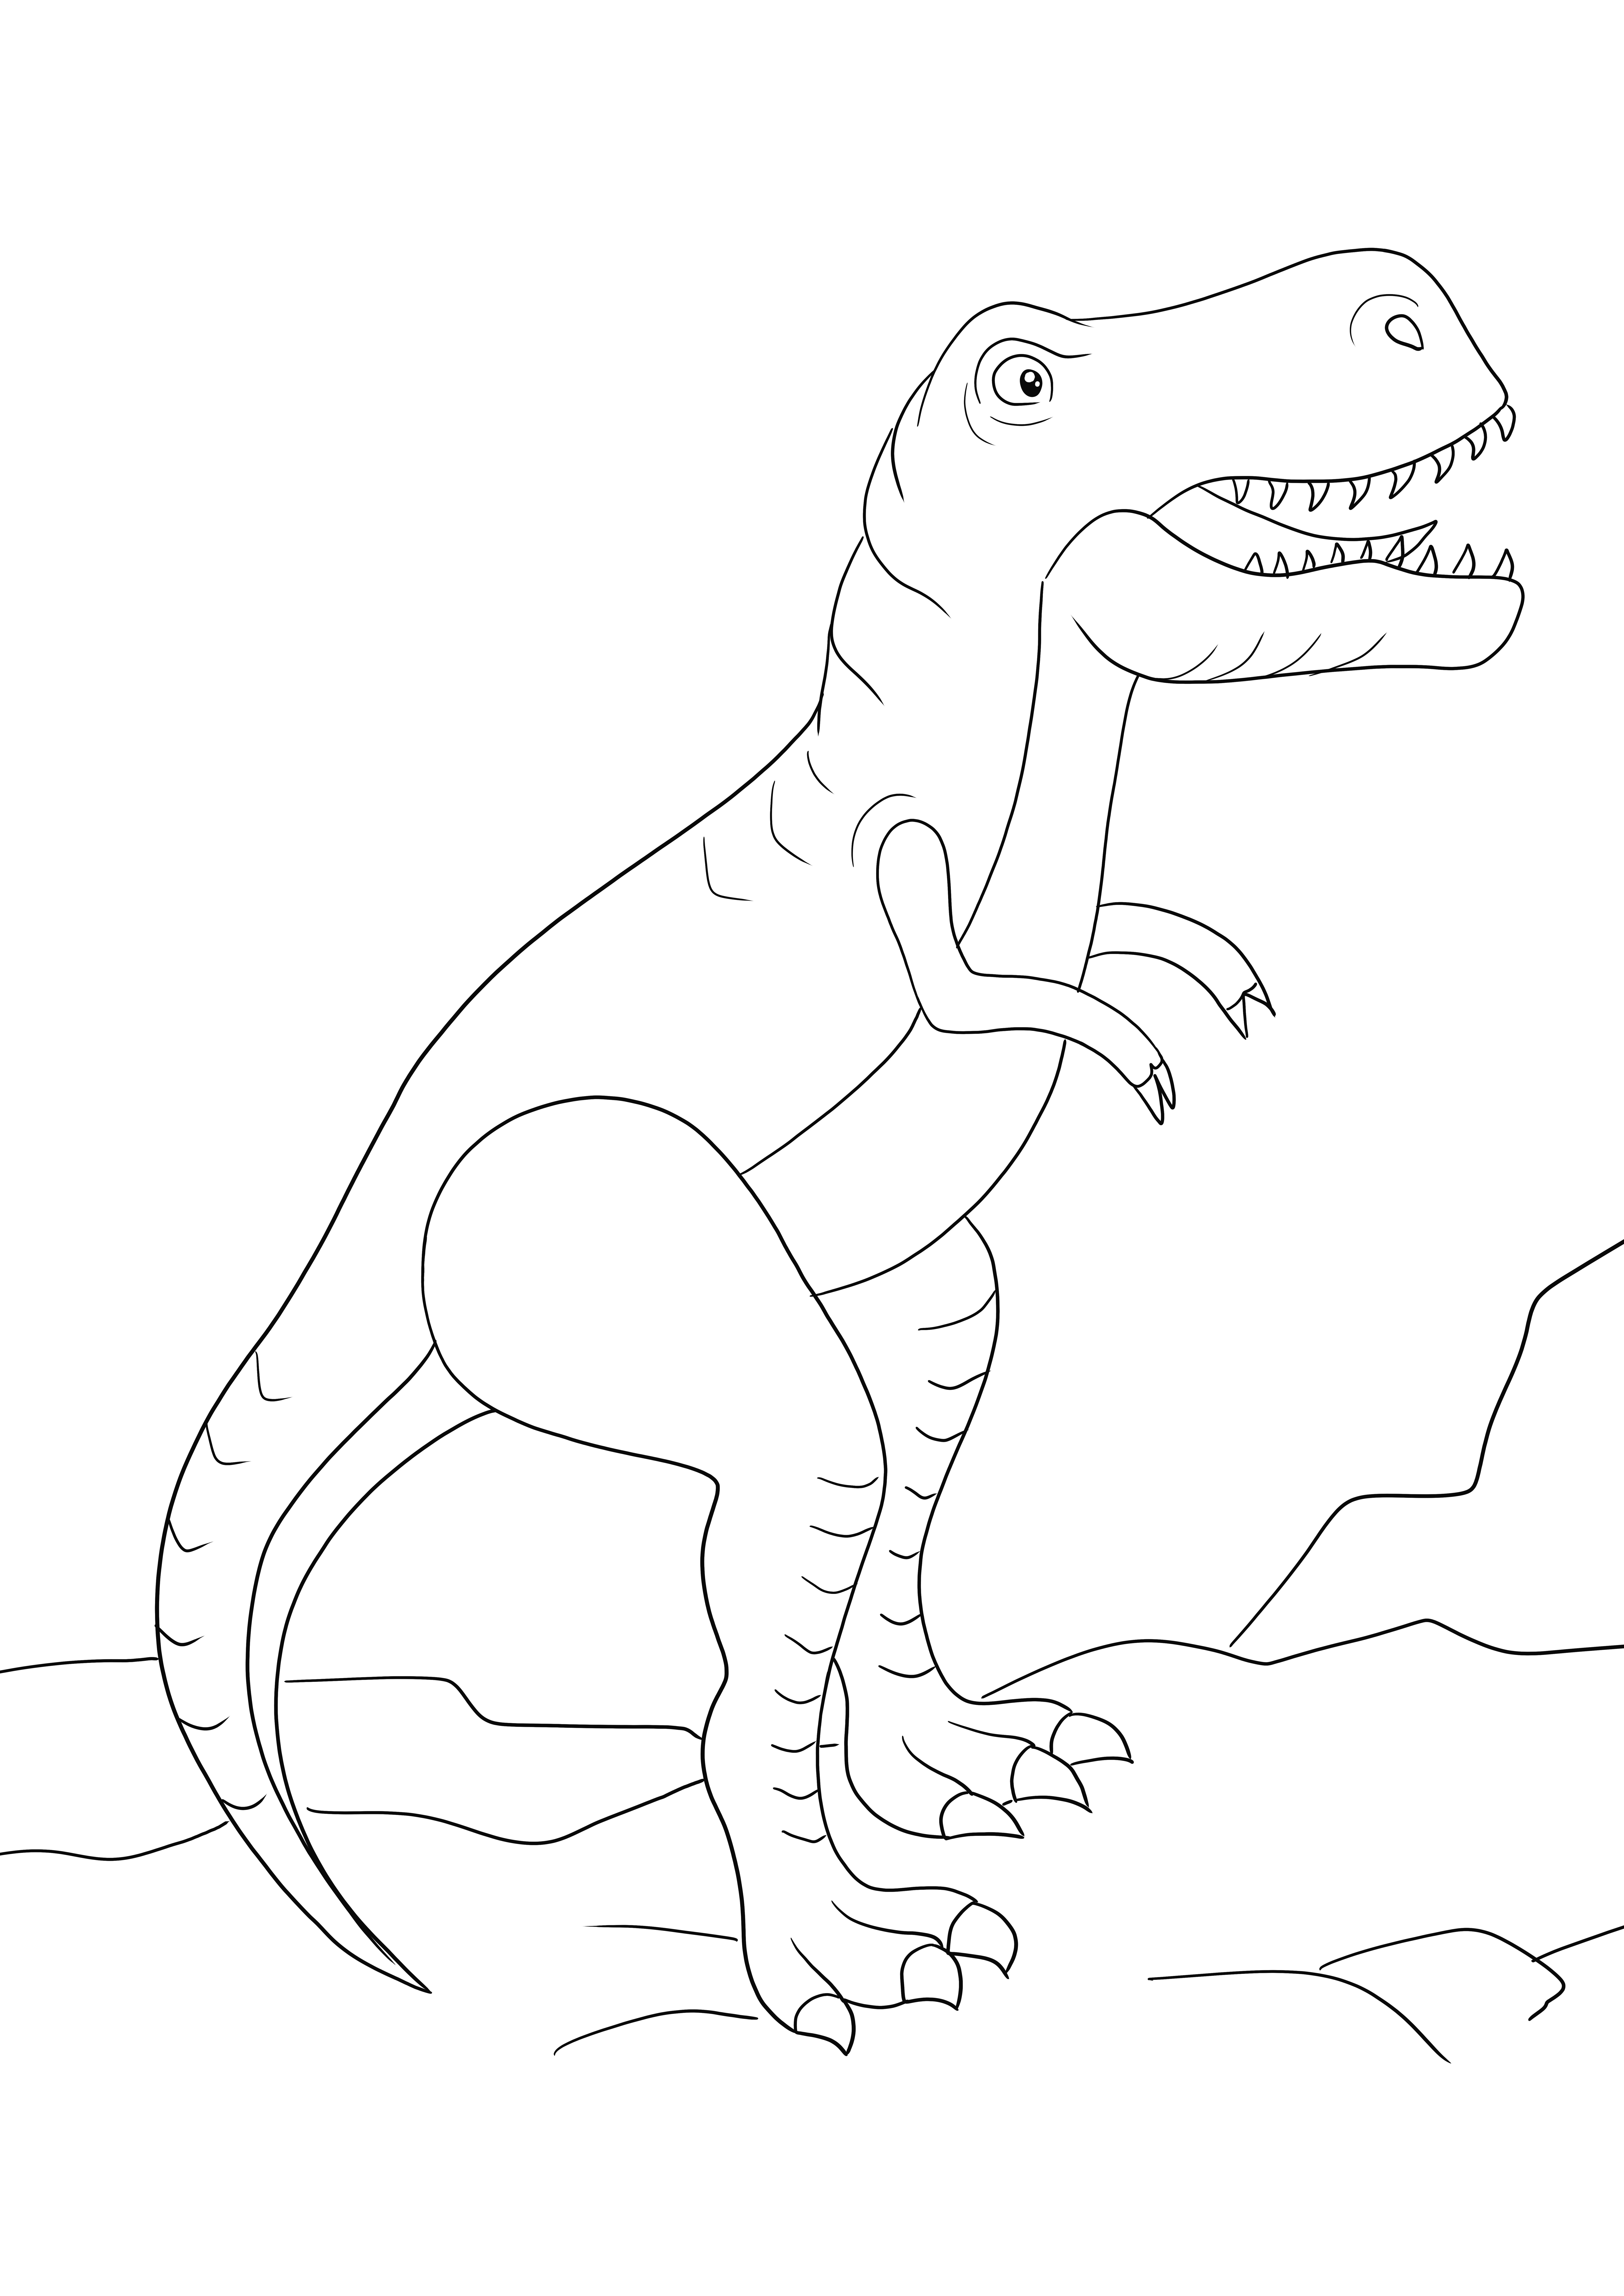 Ladattava värityssivu suuresta T-Rexistä ilmaiseksi ja väritettynä